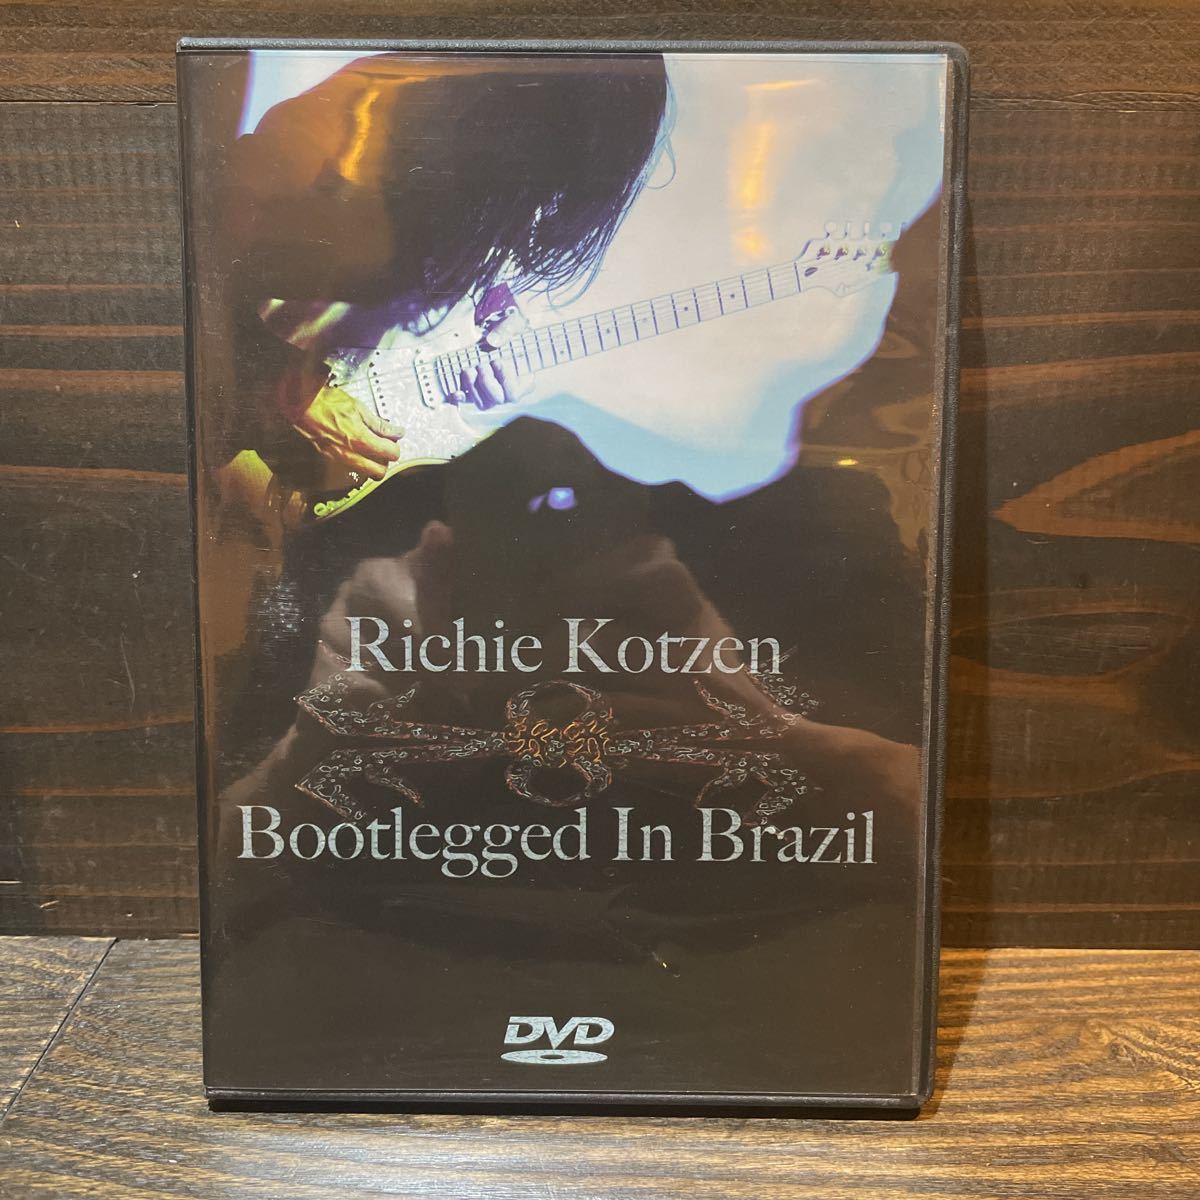 Richie Kotzen - Bootlegged In Brazil DVD リッチー・コーツェン_画像2